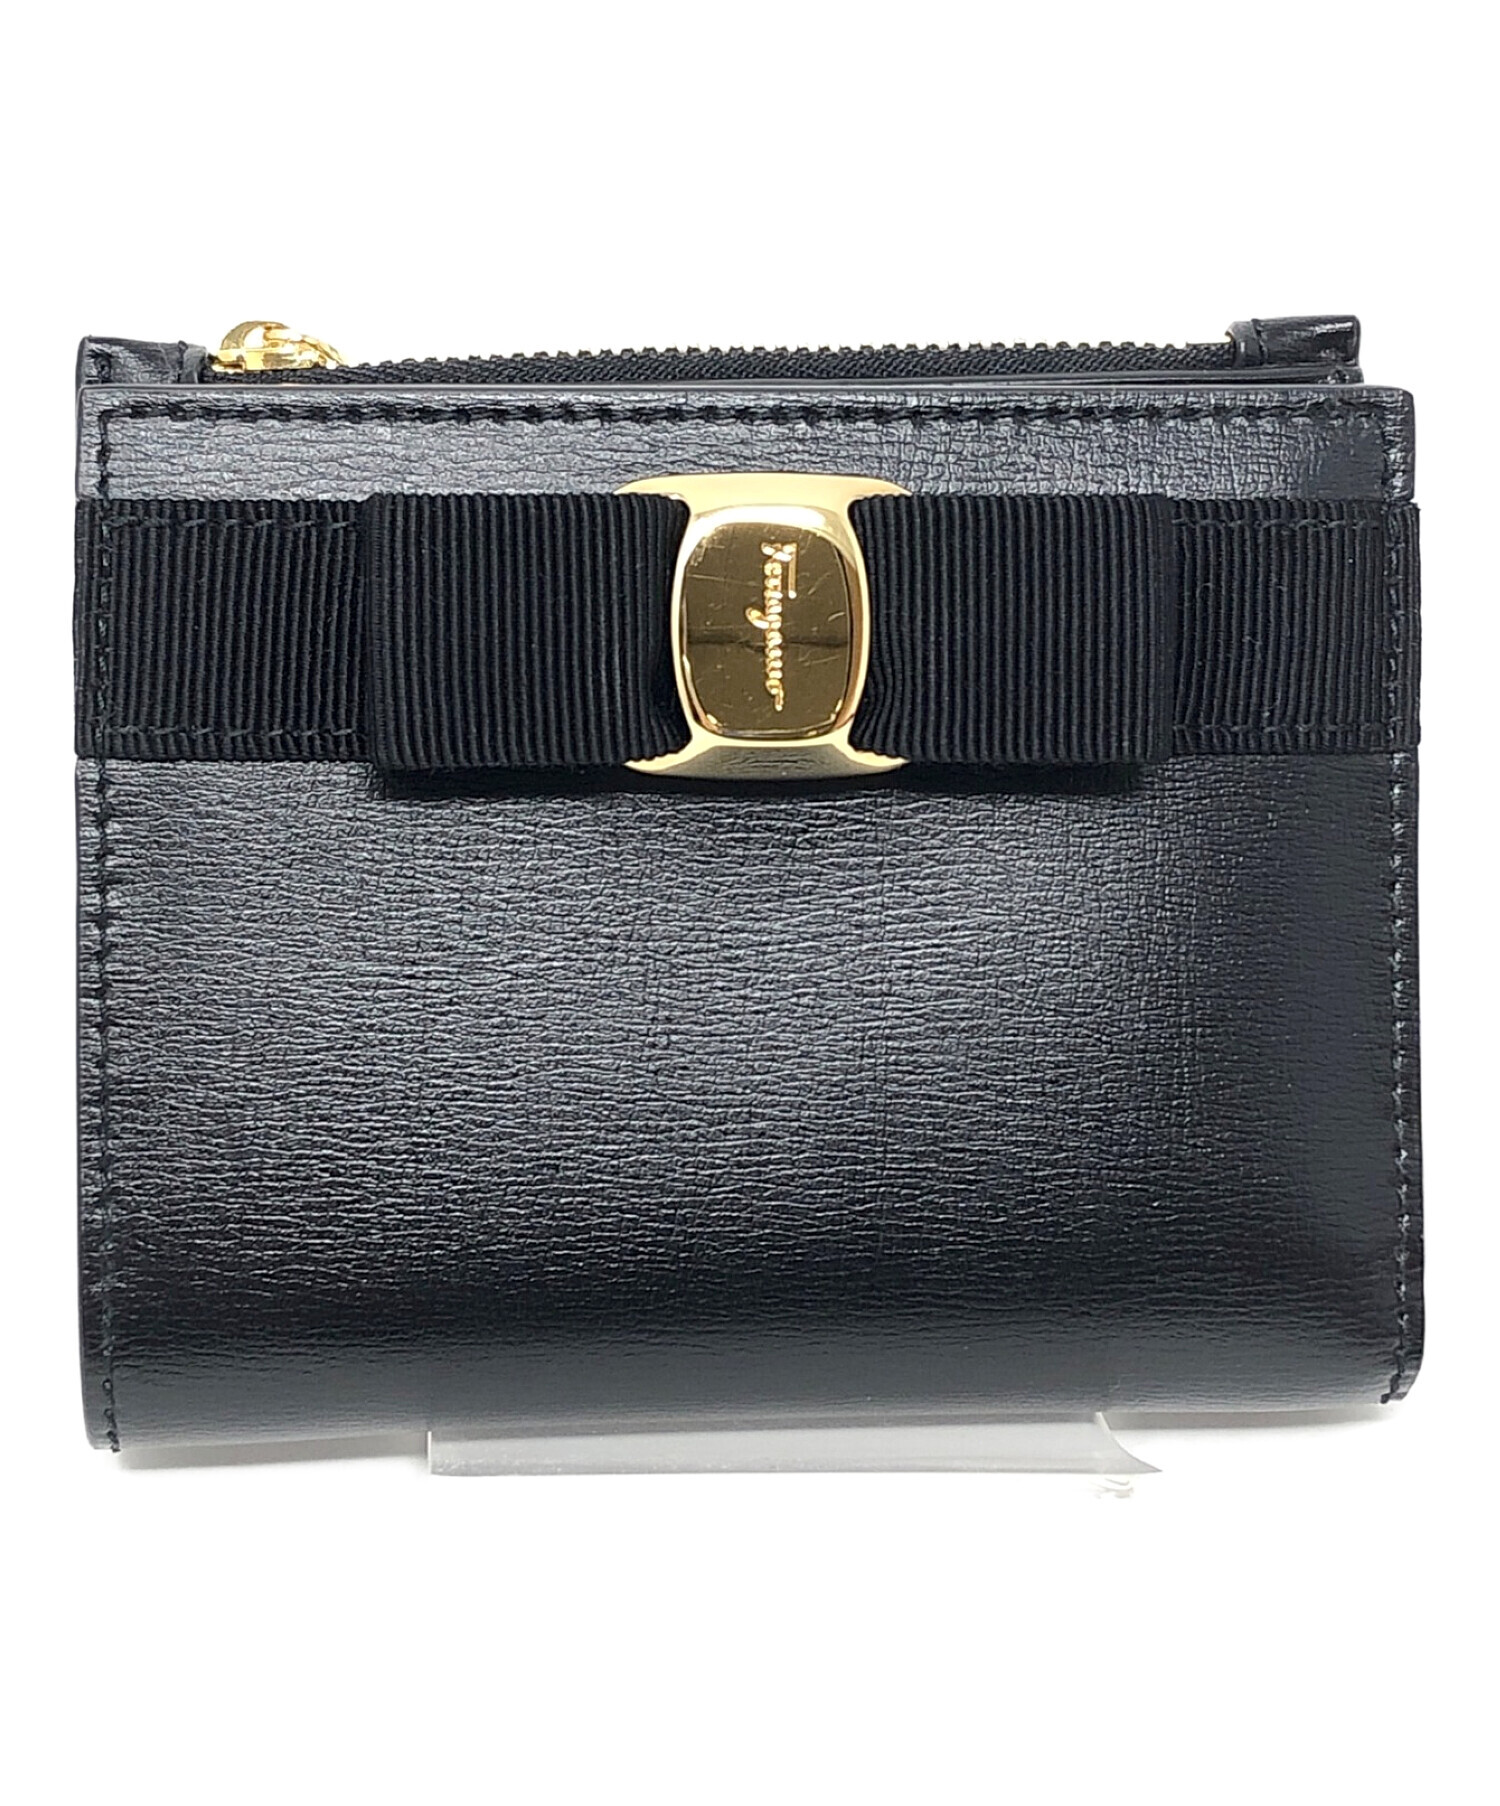 Salvatore Ferragamo (サルヴァトーレ フェラガモ) 2つ折り財布 ブラック サイズ:実寸サイズにてご確認ください。